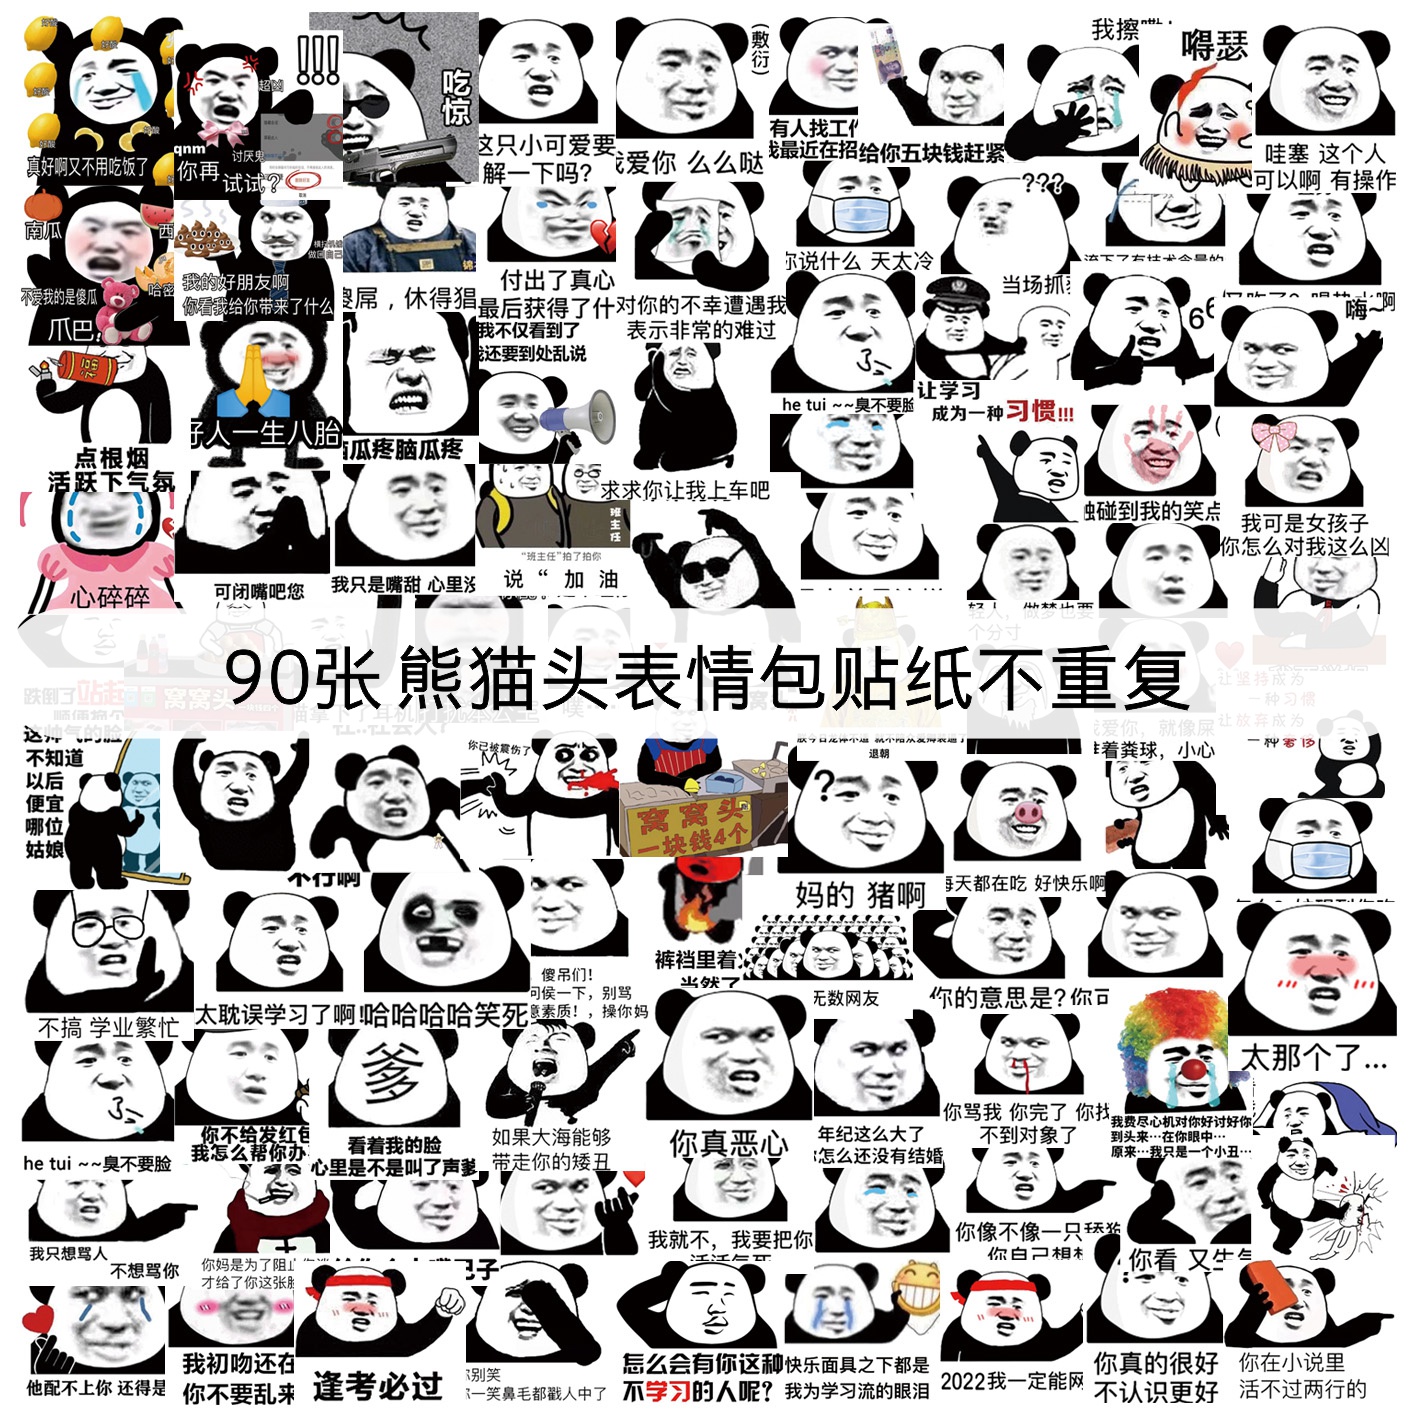 90枚熊猫头表情包手账贴纸可爱谐音梗黑白创意手帐笔记本装饰手机